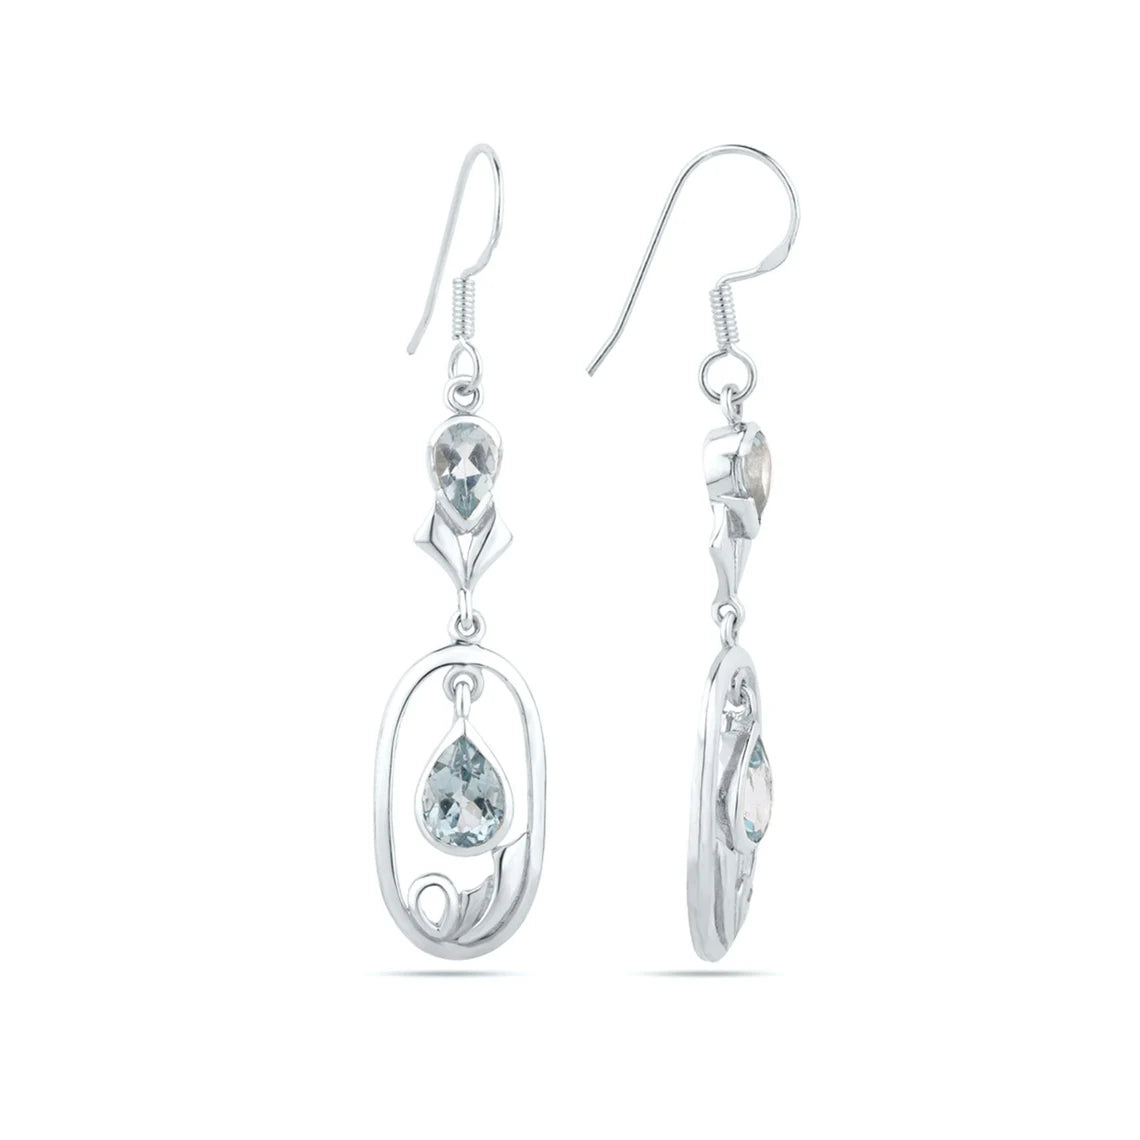 Drop Earring - 925 Sterling Silver - Elegant Sky Blue Topaz Gemstone Earring